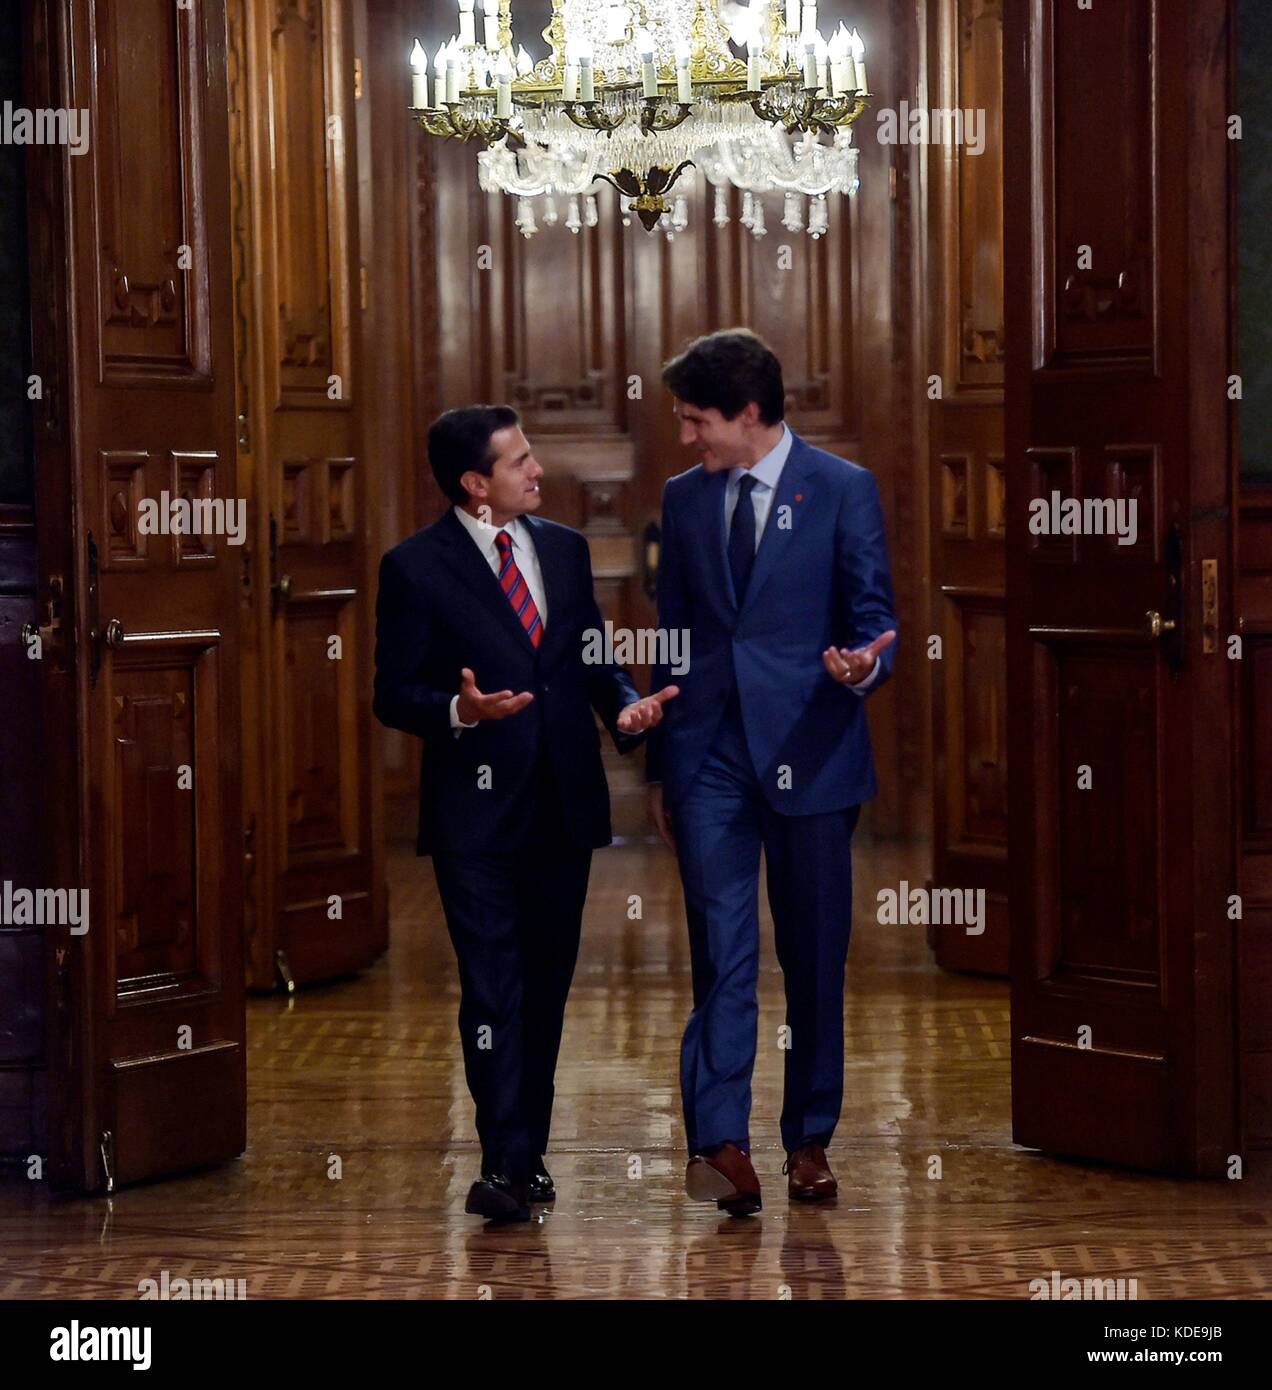 Le premier ministre du Canada, Justin Trudeau et le président mexicain Enrique pena nieto marcher ensemble à la suite d'une rencontre bilatérale au palais national le 12 octobre 2017 à Mexico, Mexique. Presidenciamx planetpix (via) Banque D'Images